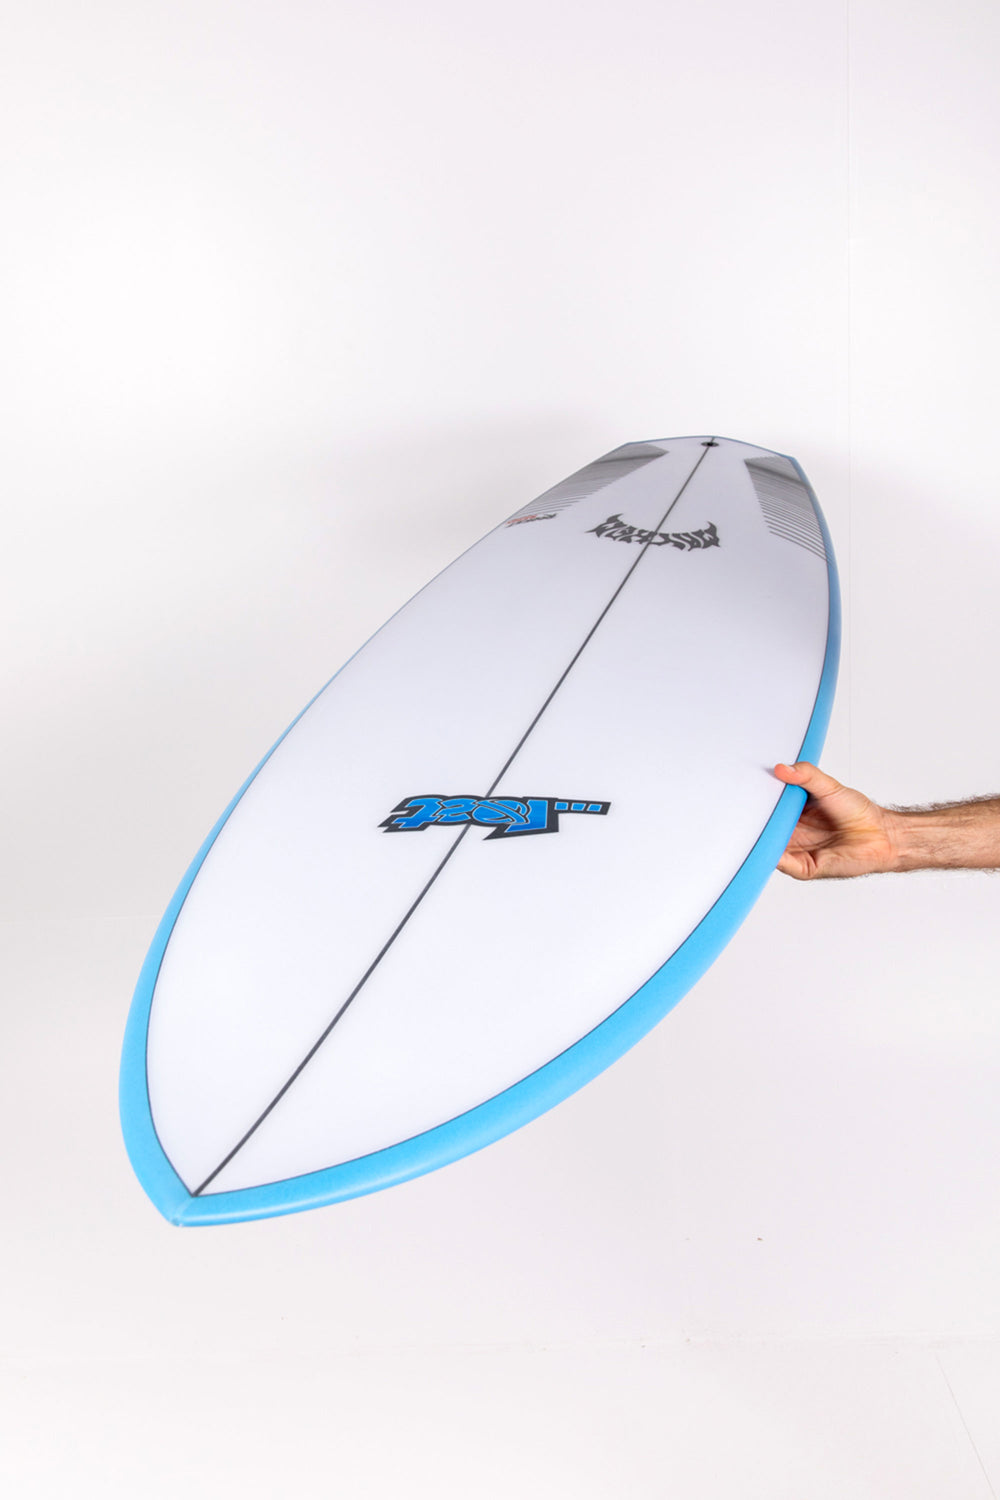 Lost Surfboard - ROCKET REDUX by Matt Biolos - 5'11” x 20,25 x 2 